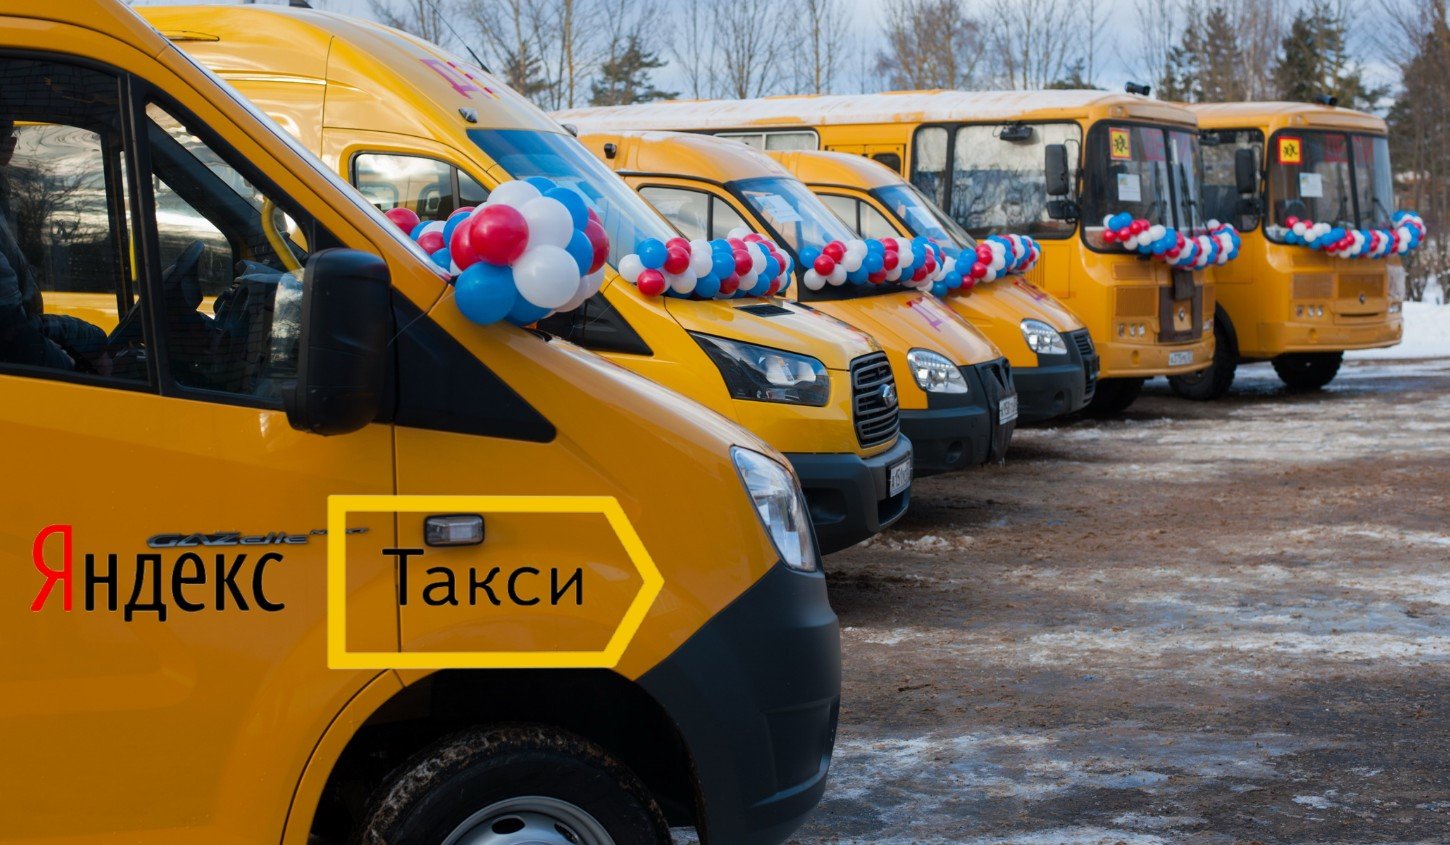 Маршрутное такси 9. Школьные автобусы в России. Общественный транспорт такси.